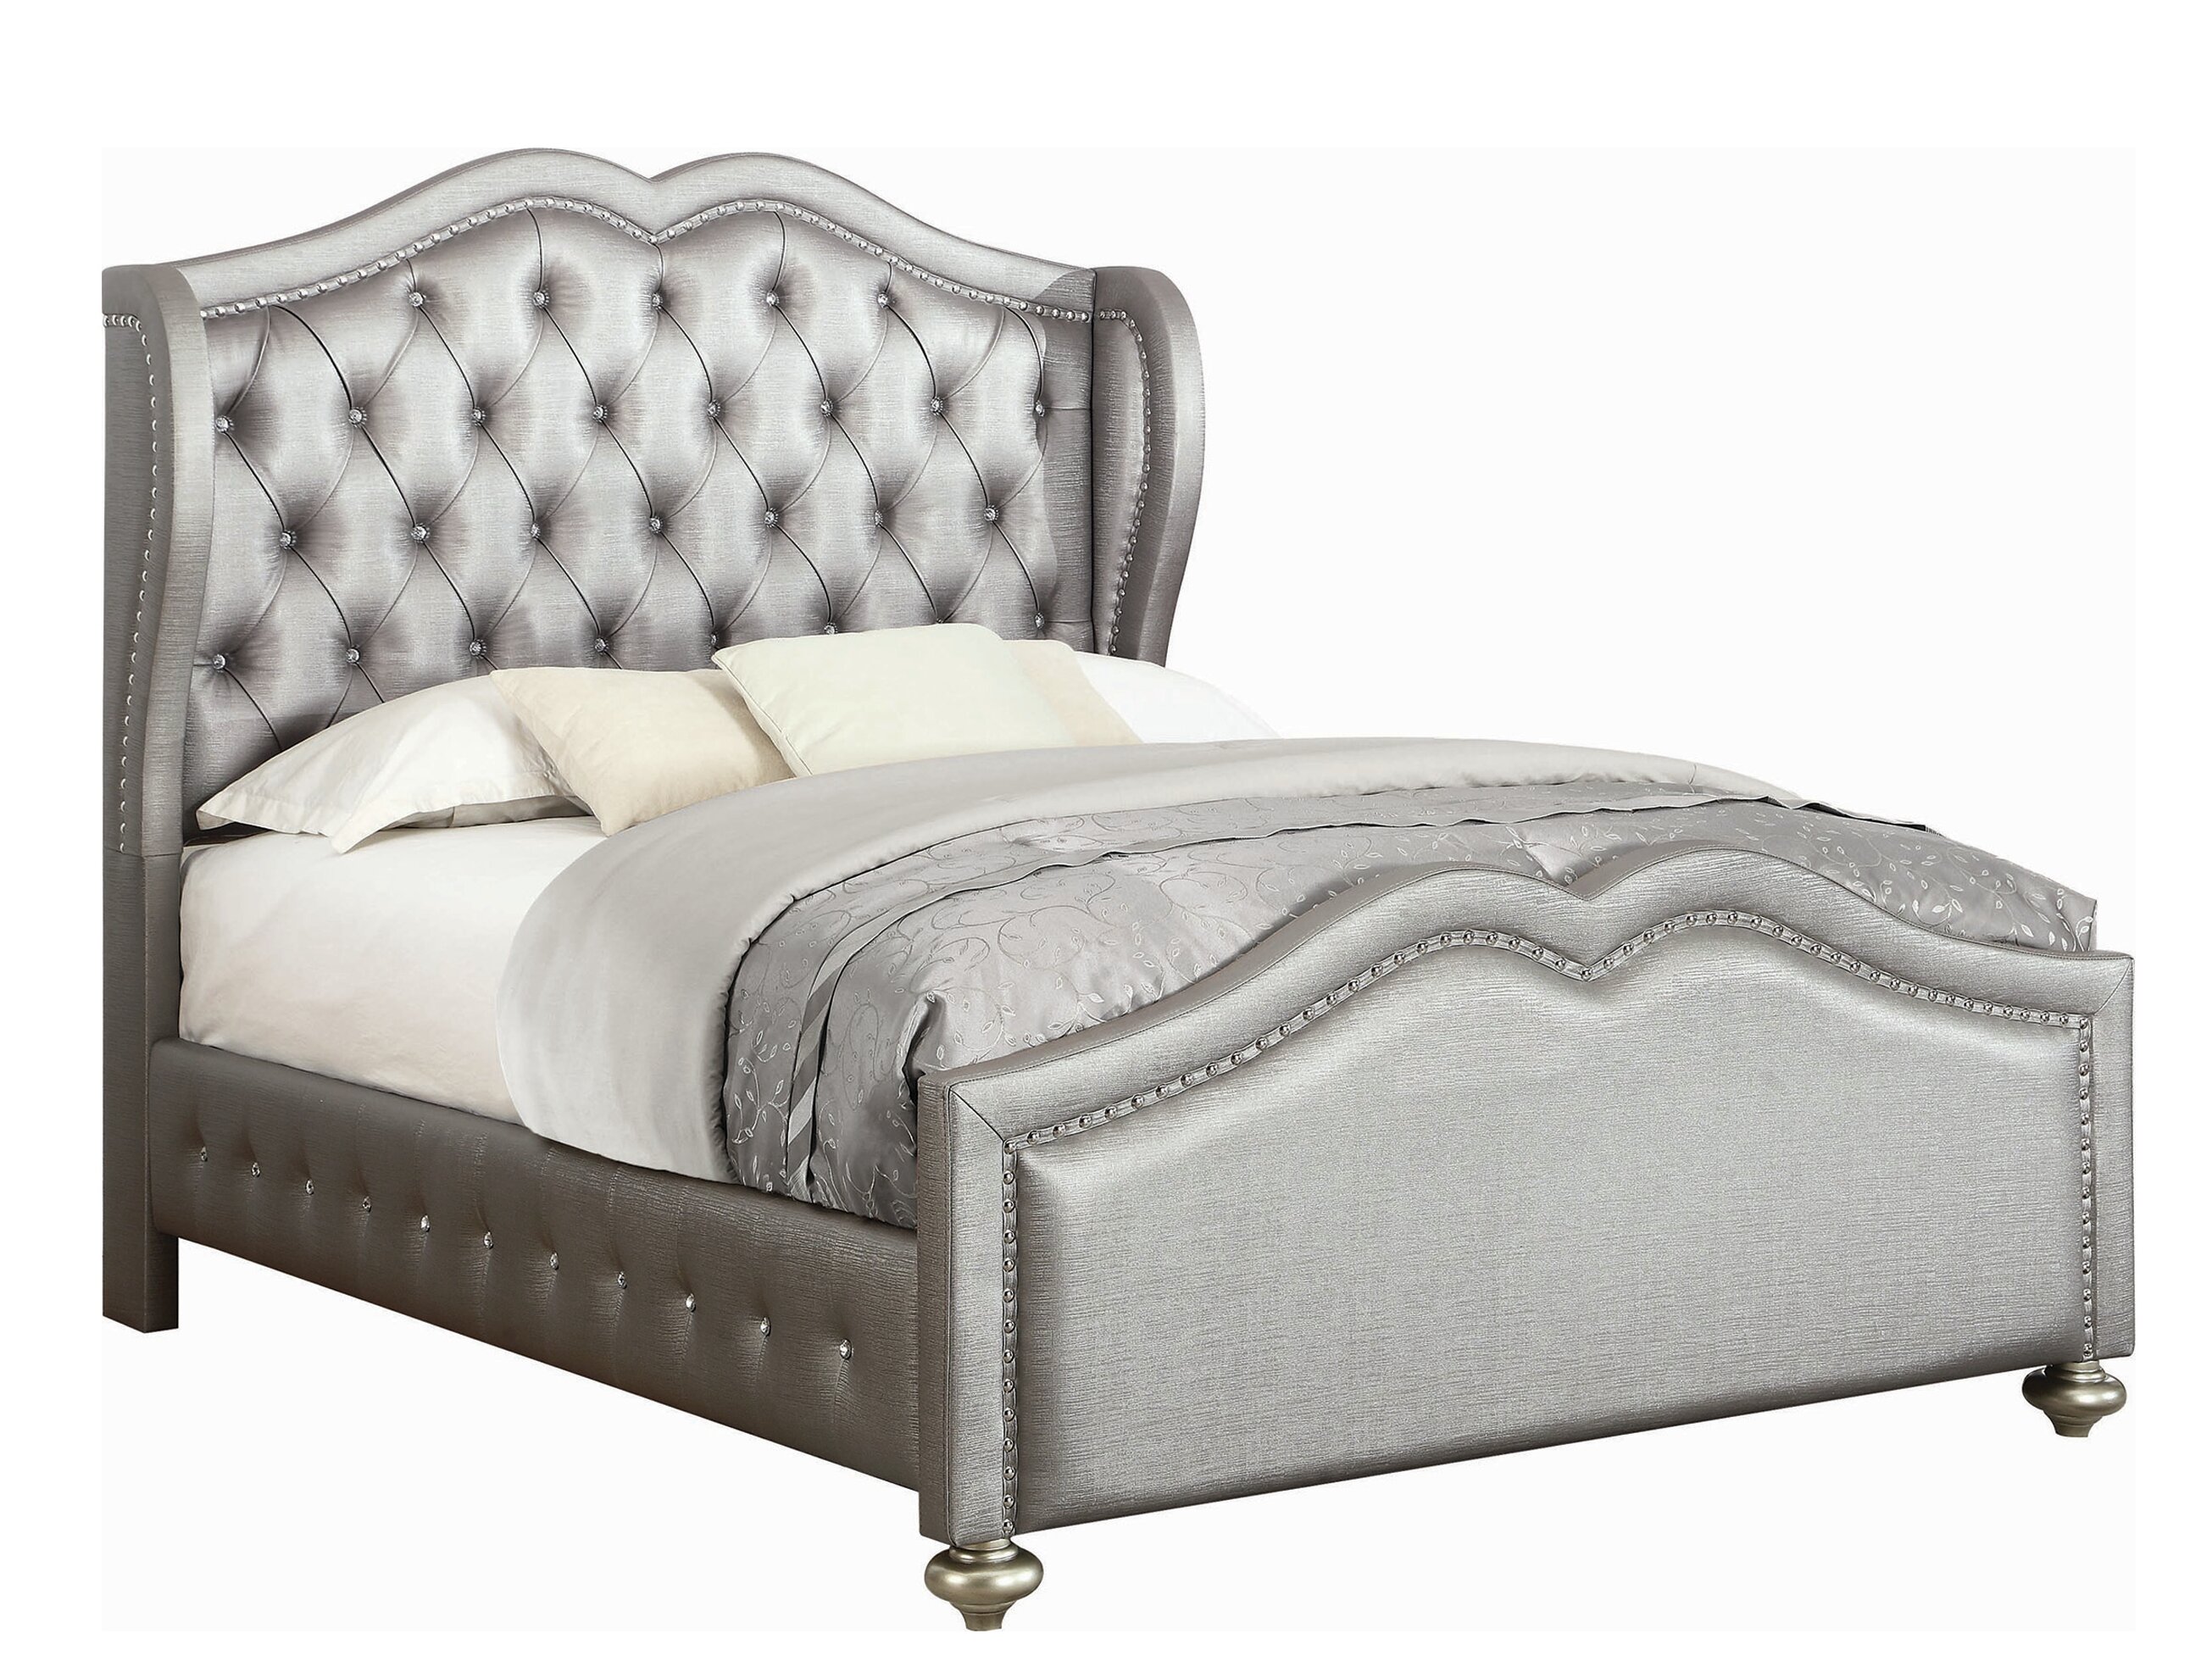 Launceston Metallic Upholstered Bed